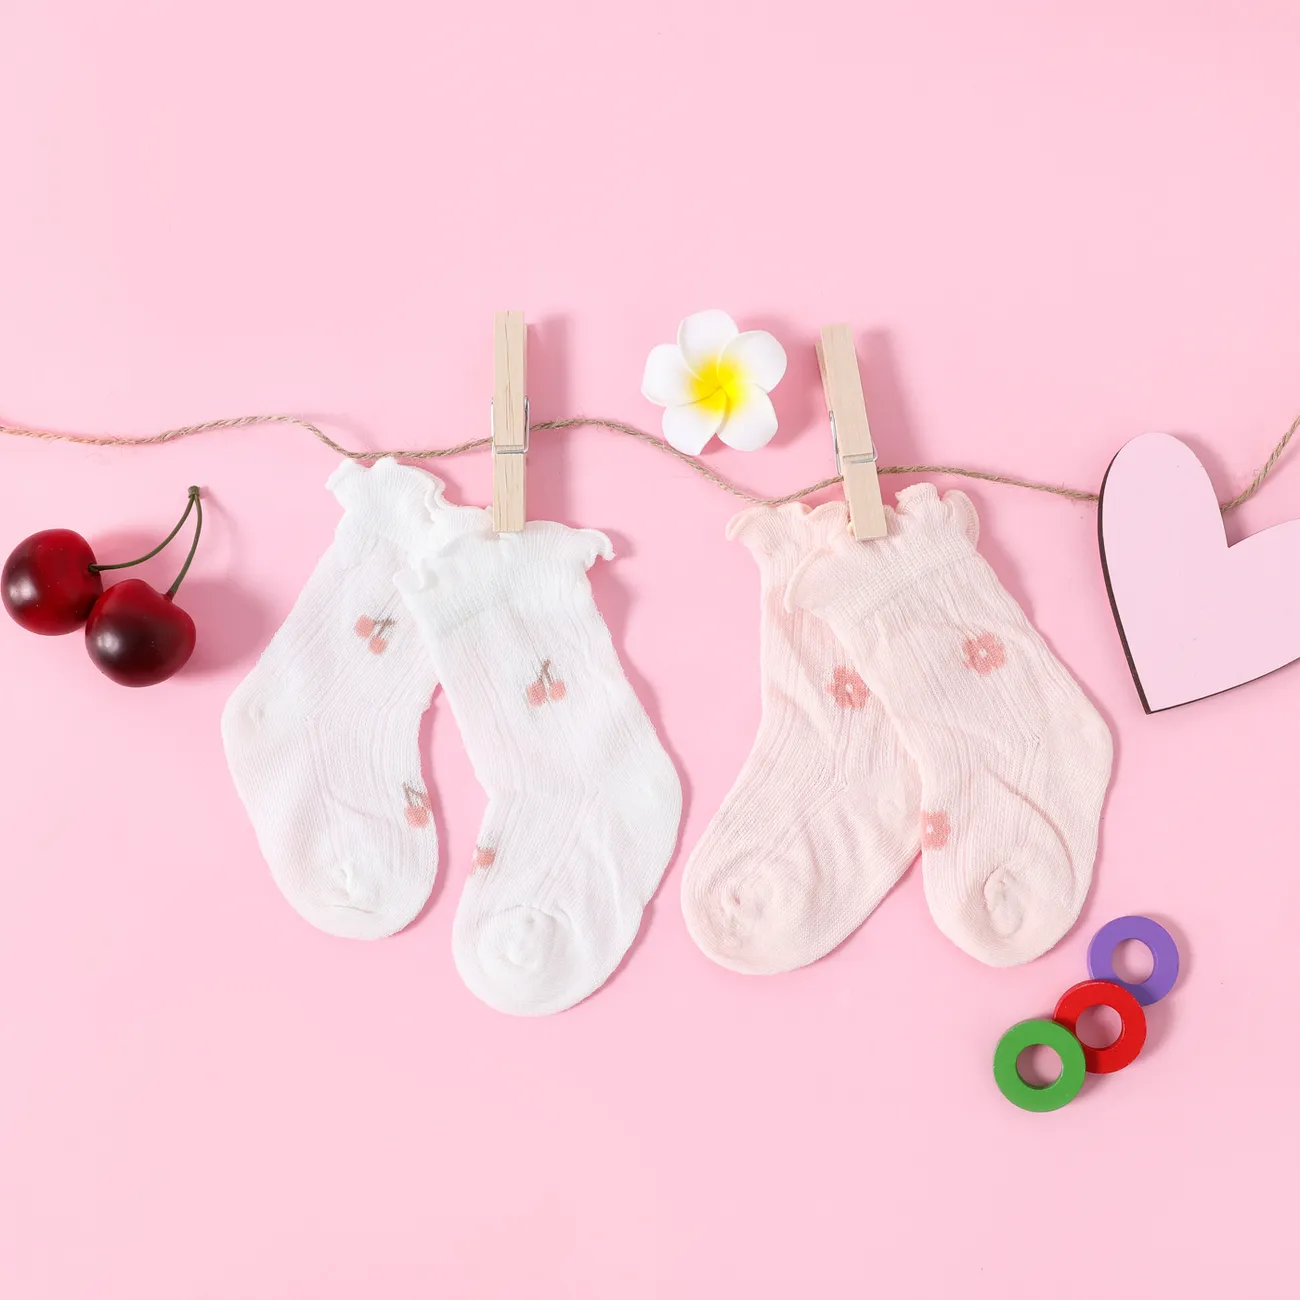 calcetines de malla con ribete de lechuga y estampado floral de cereza para bebés / niños pequeños Blanco big image 1